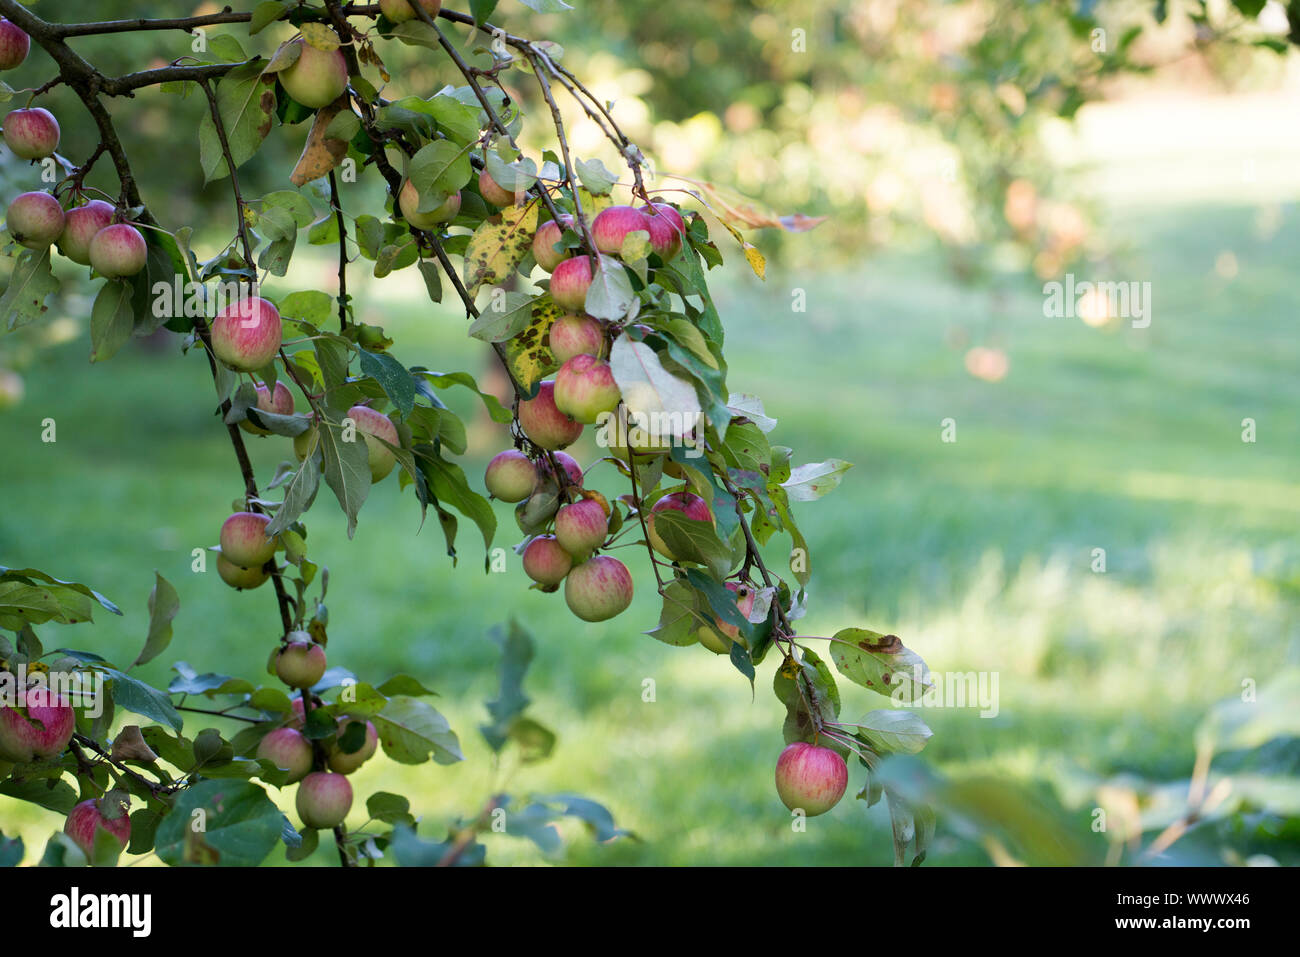 Schöner von Herrnhut; Herrnhut, German apple cultivar, Germany, Europe Stock Photo